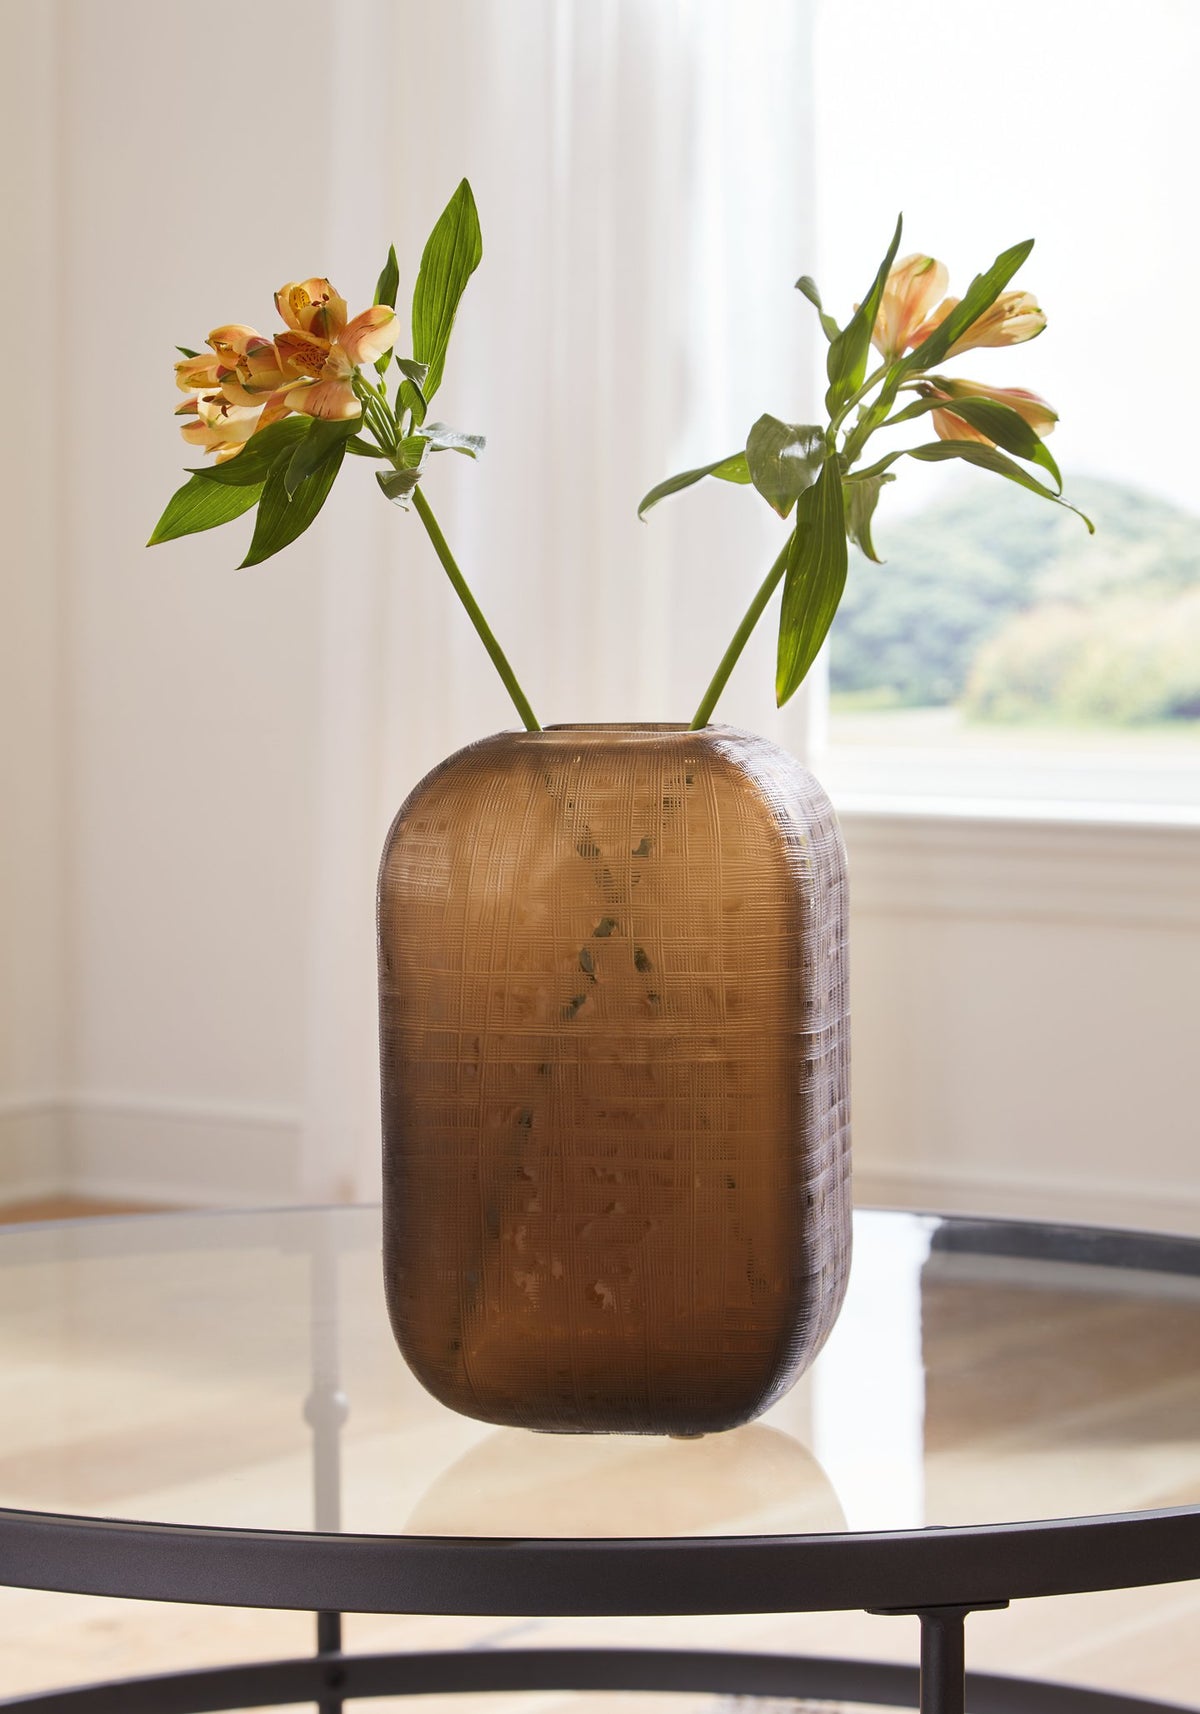 Capard Vase - Half Price Furniture